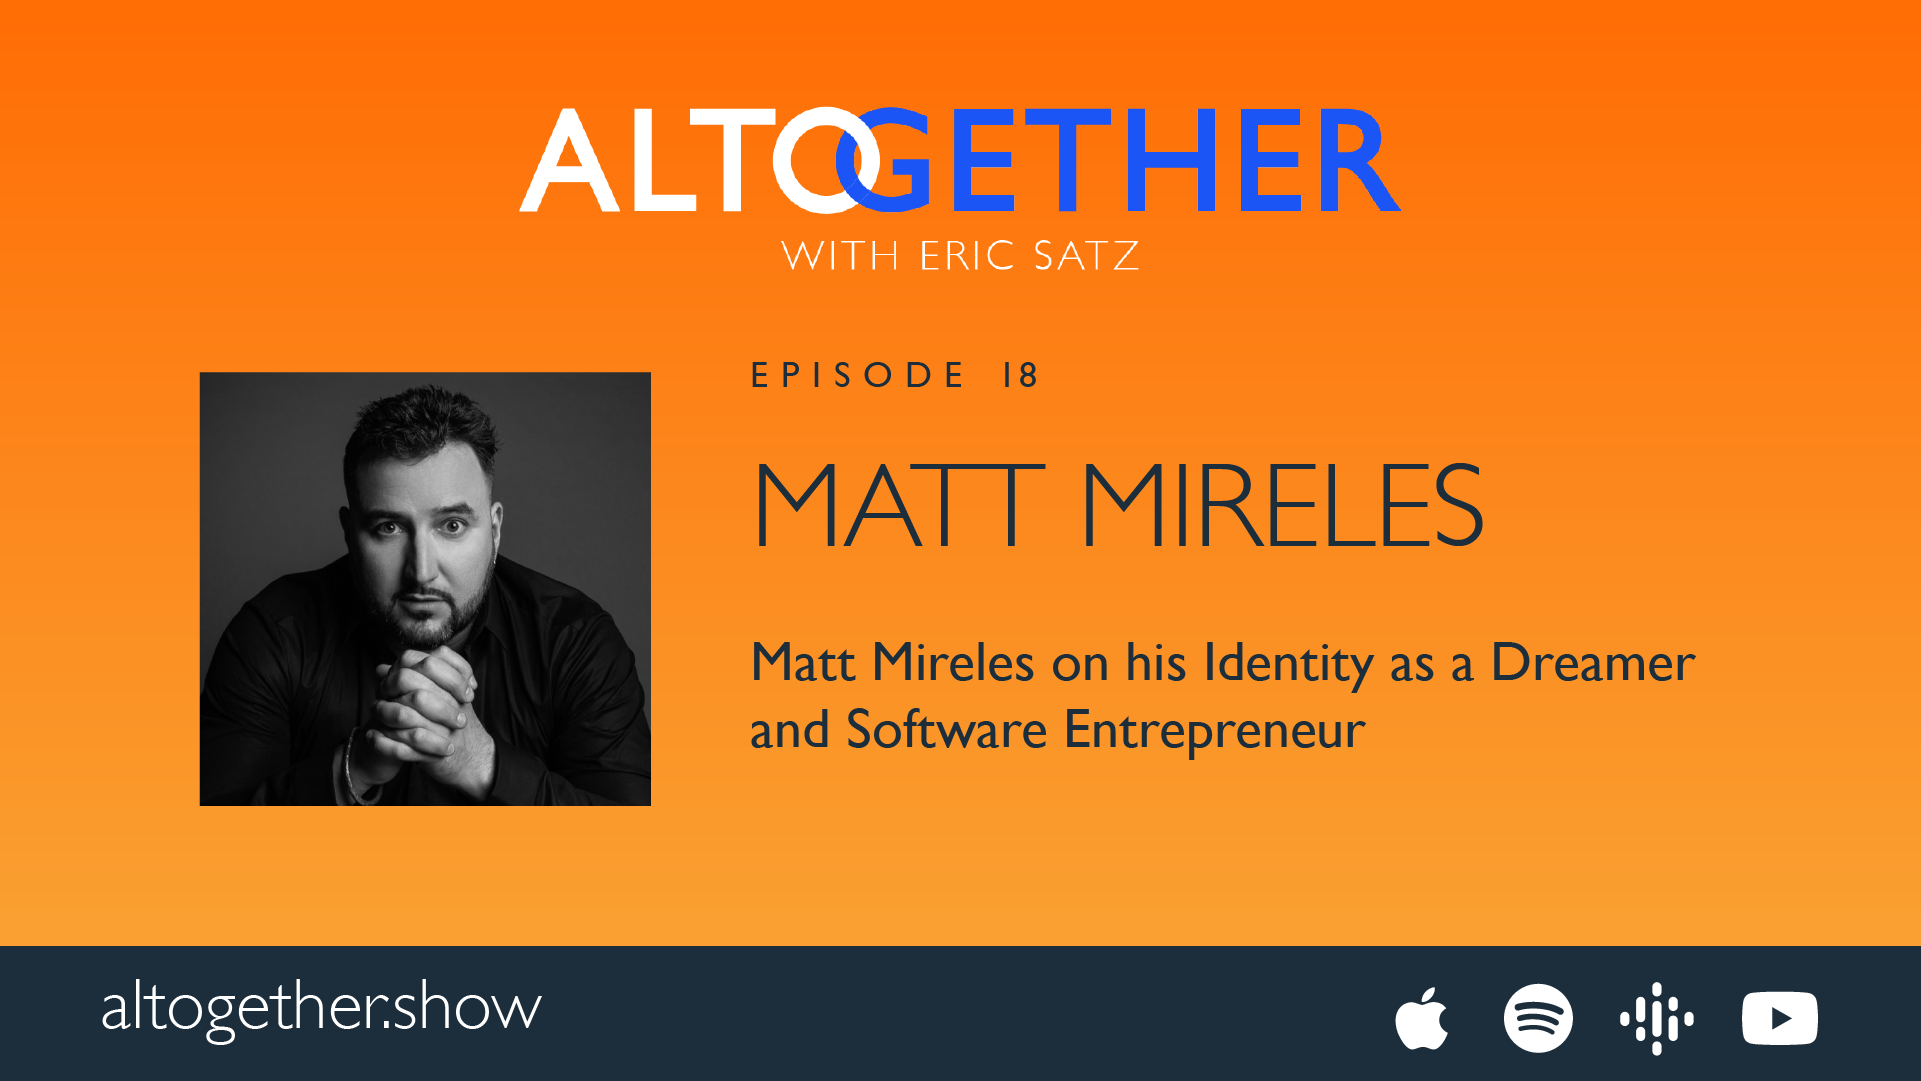 Matt Mireles on Being a Software Entrepreneur